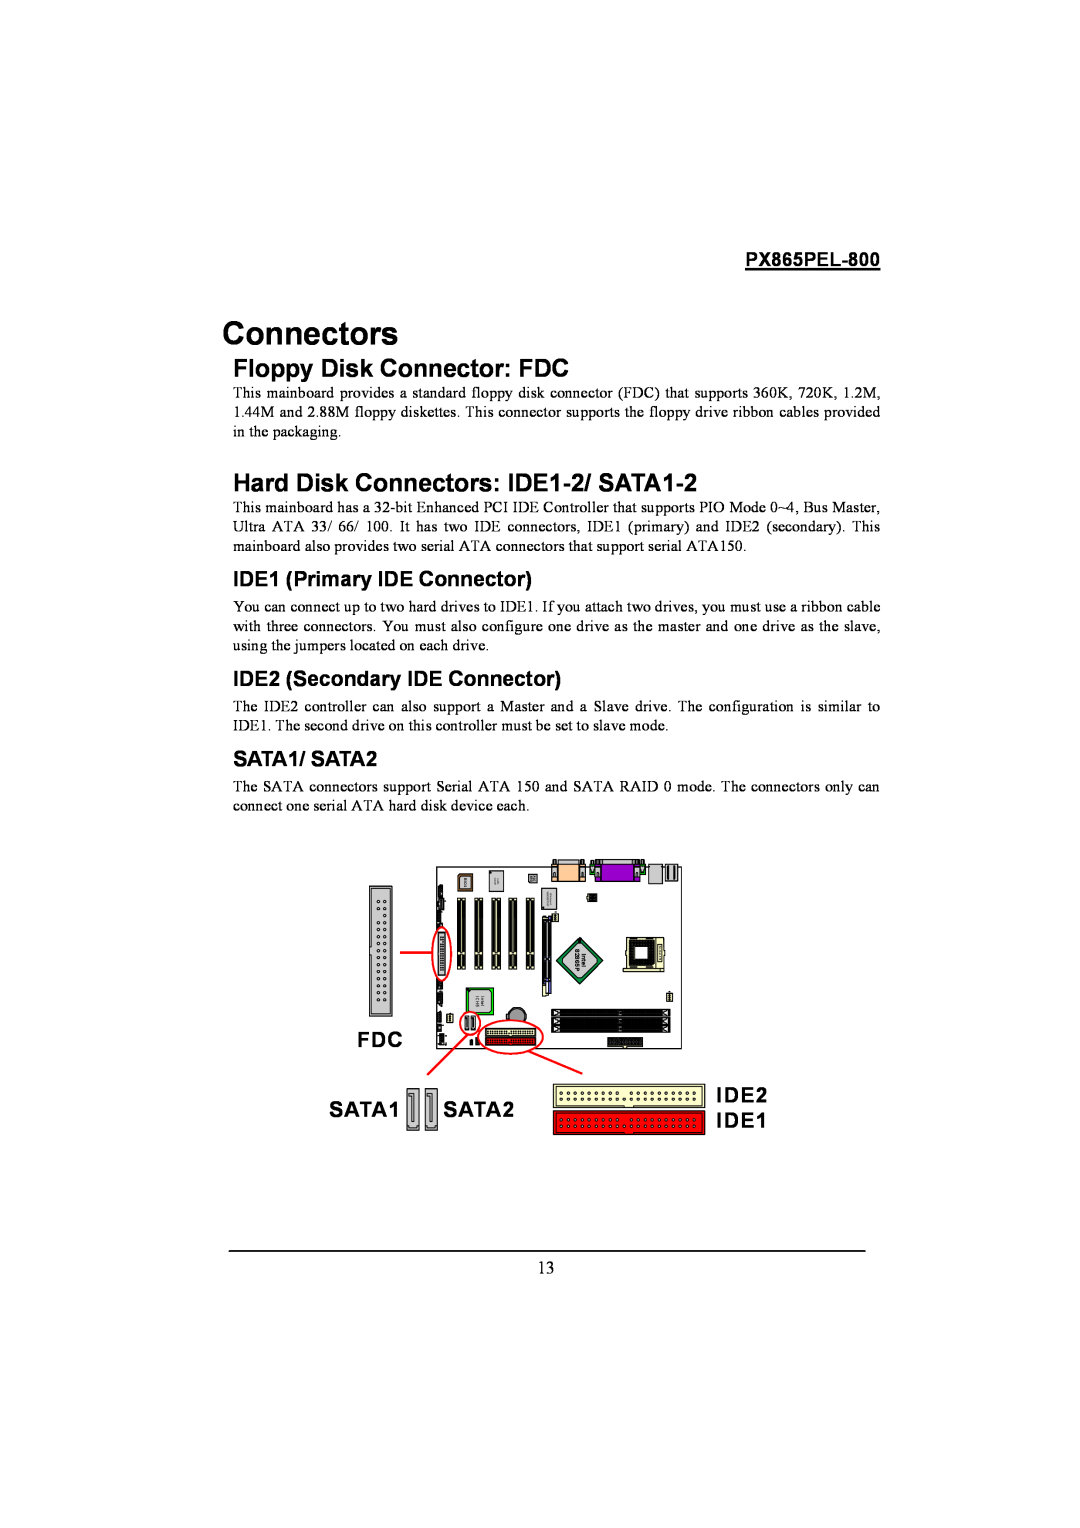 Intel PX865PEL-800 warranty Floppy Disk Connector FDC, Hard Disk Connectors IDE1-2/ SATA1-2, IDE1 Primary IDE Connector 